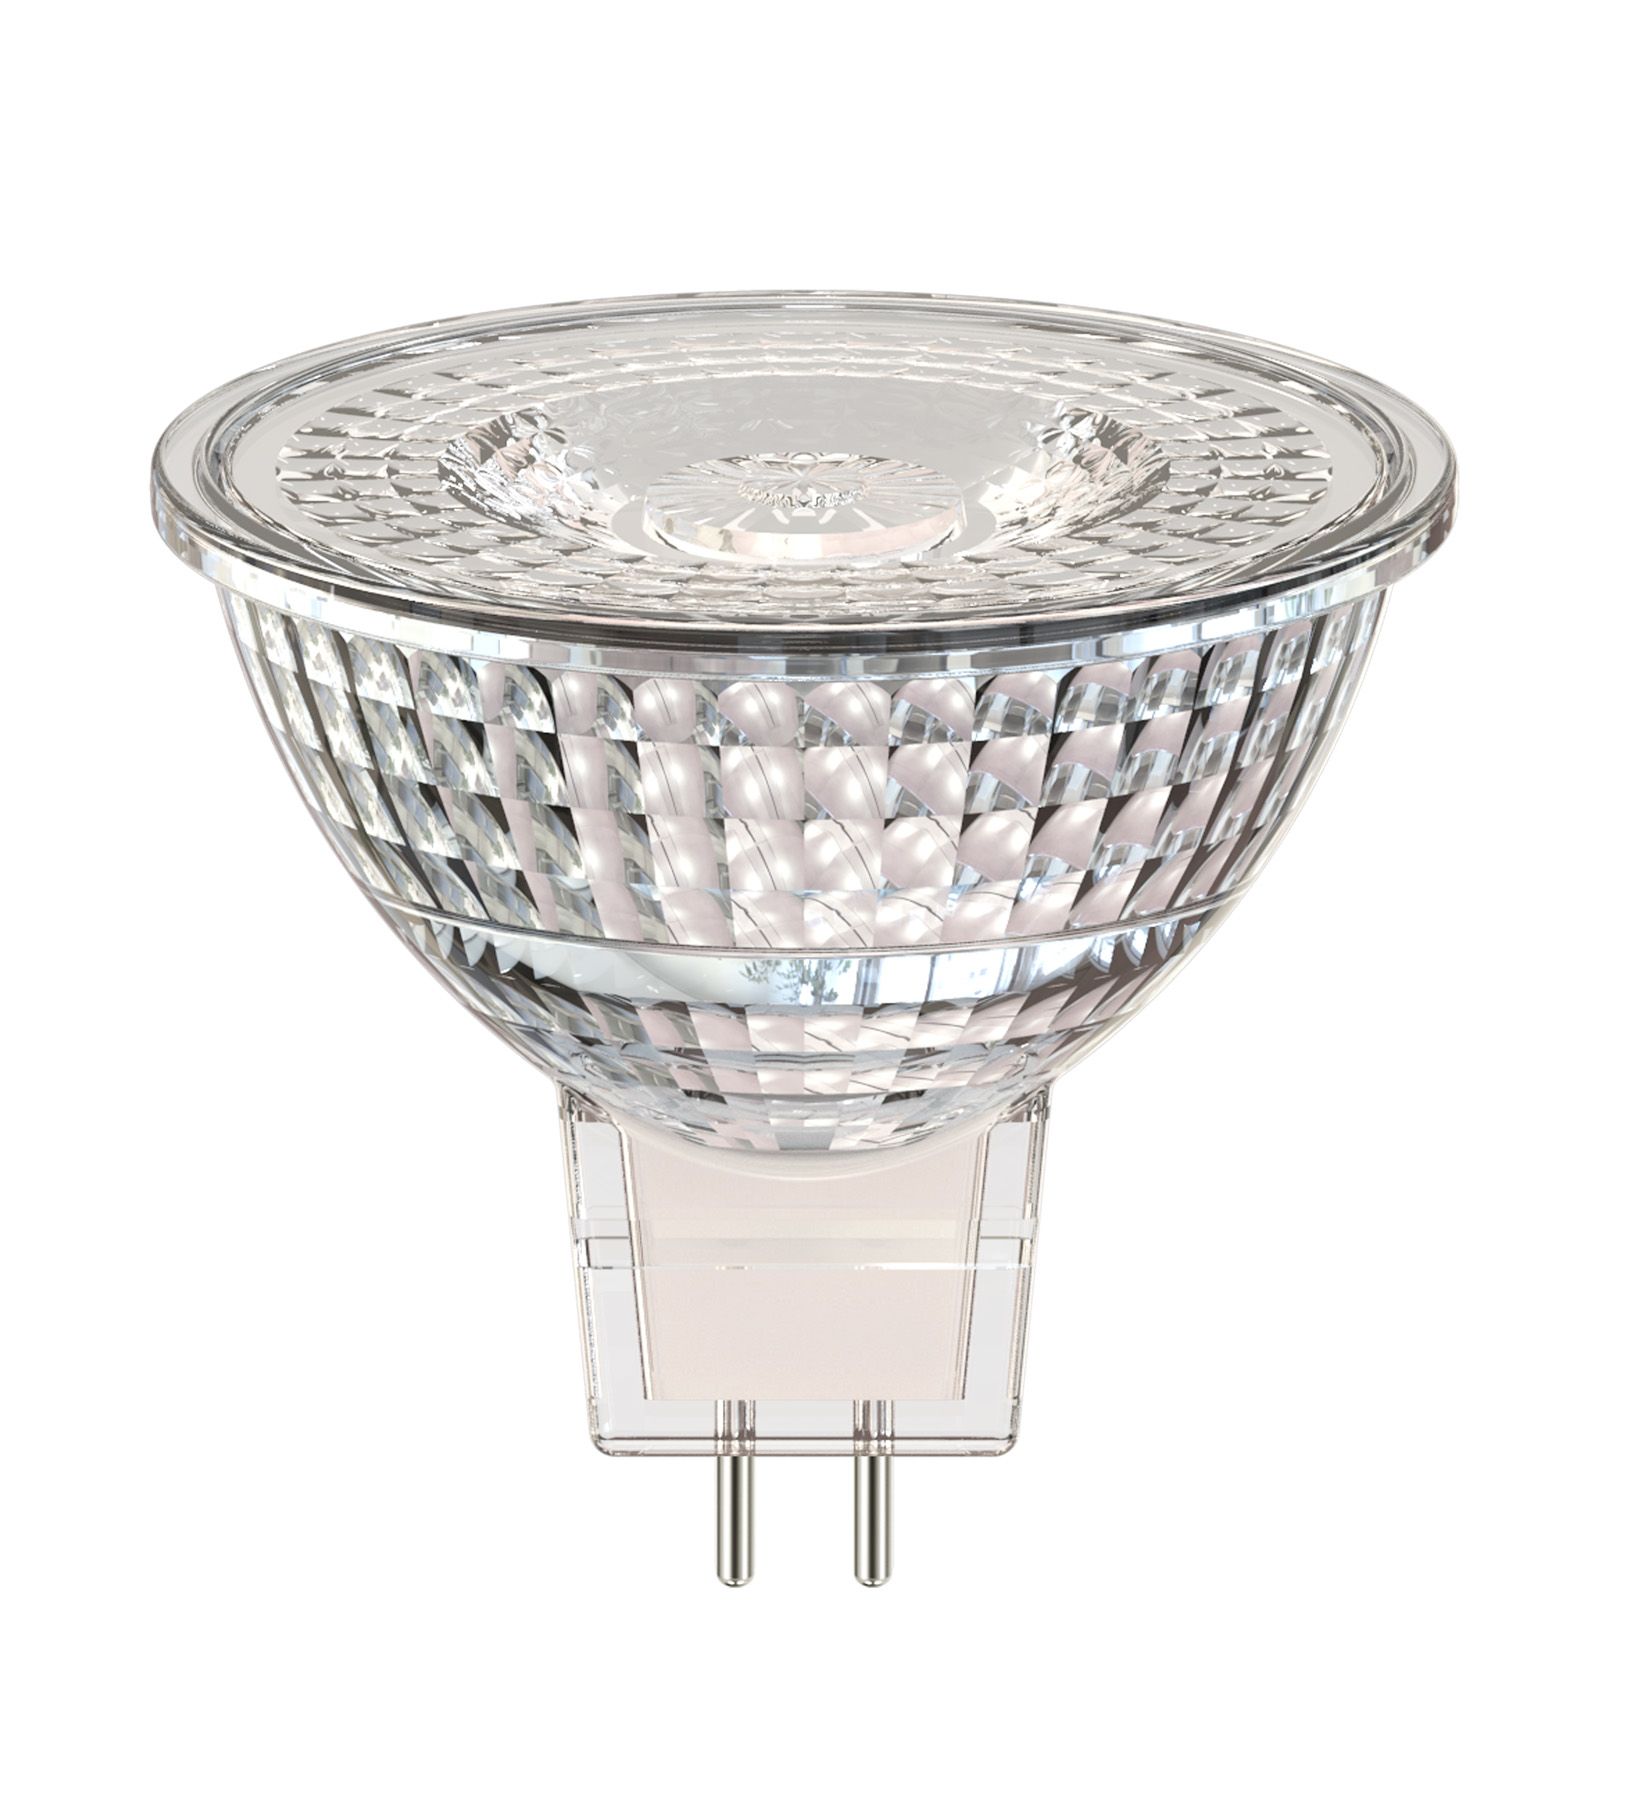 SHOT SLD6 GU5.3 LED Reflector Lamp 6.2 W(38W), 3000K, Warm White, Reflector shape